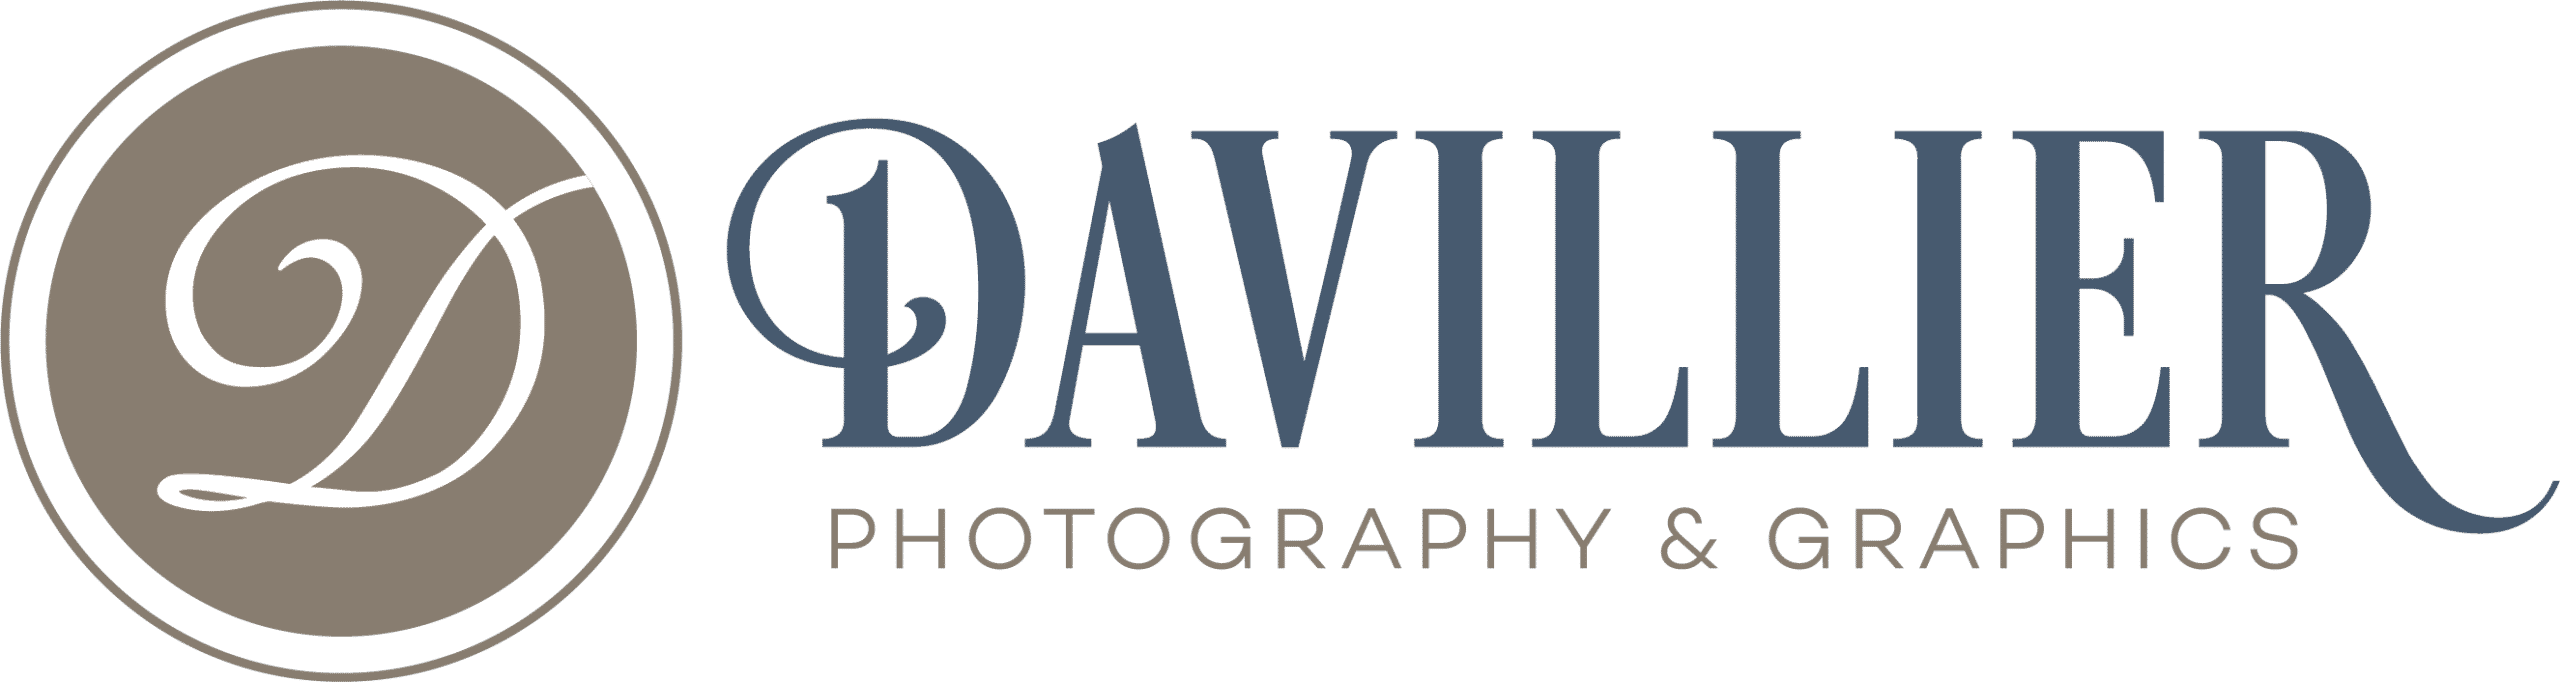 Davillier-Logo-Final